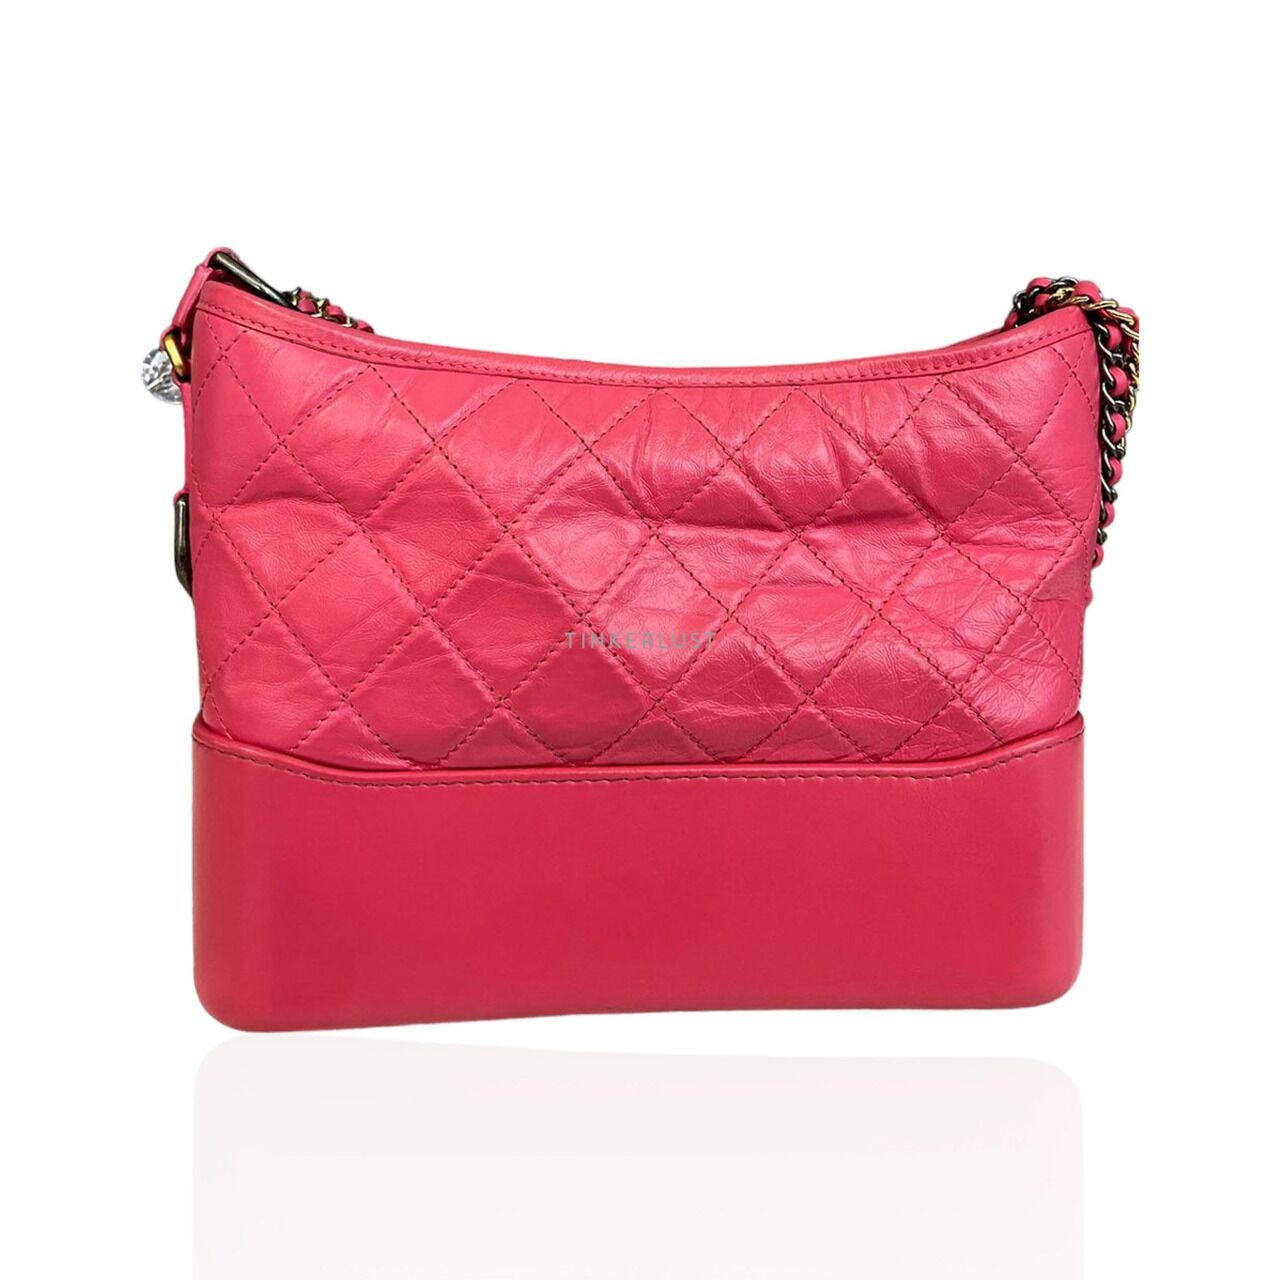 Chanel Gabrielle Medium Fuchsia #31 Sling Bag